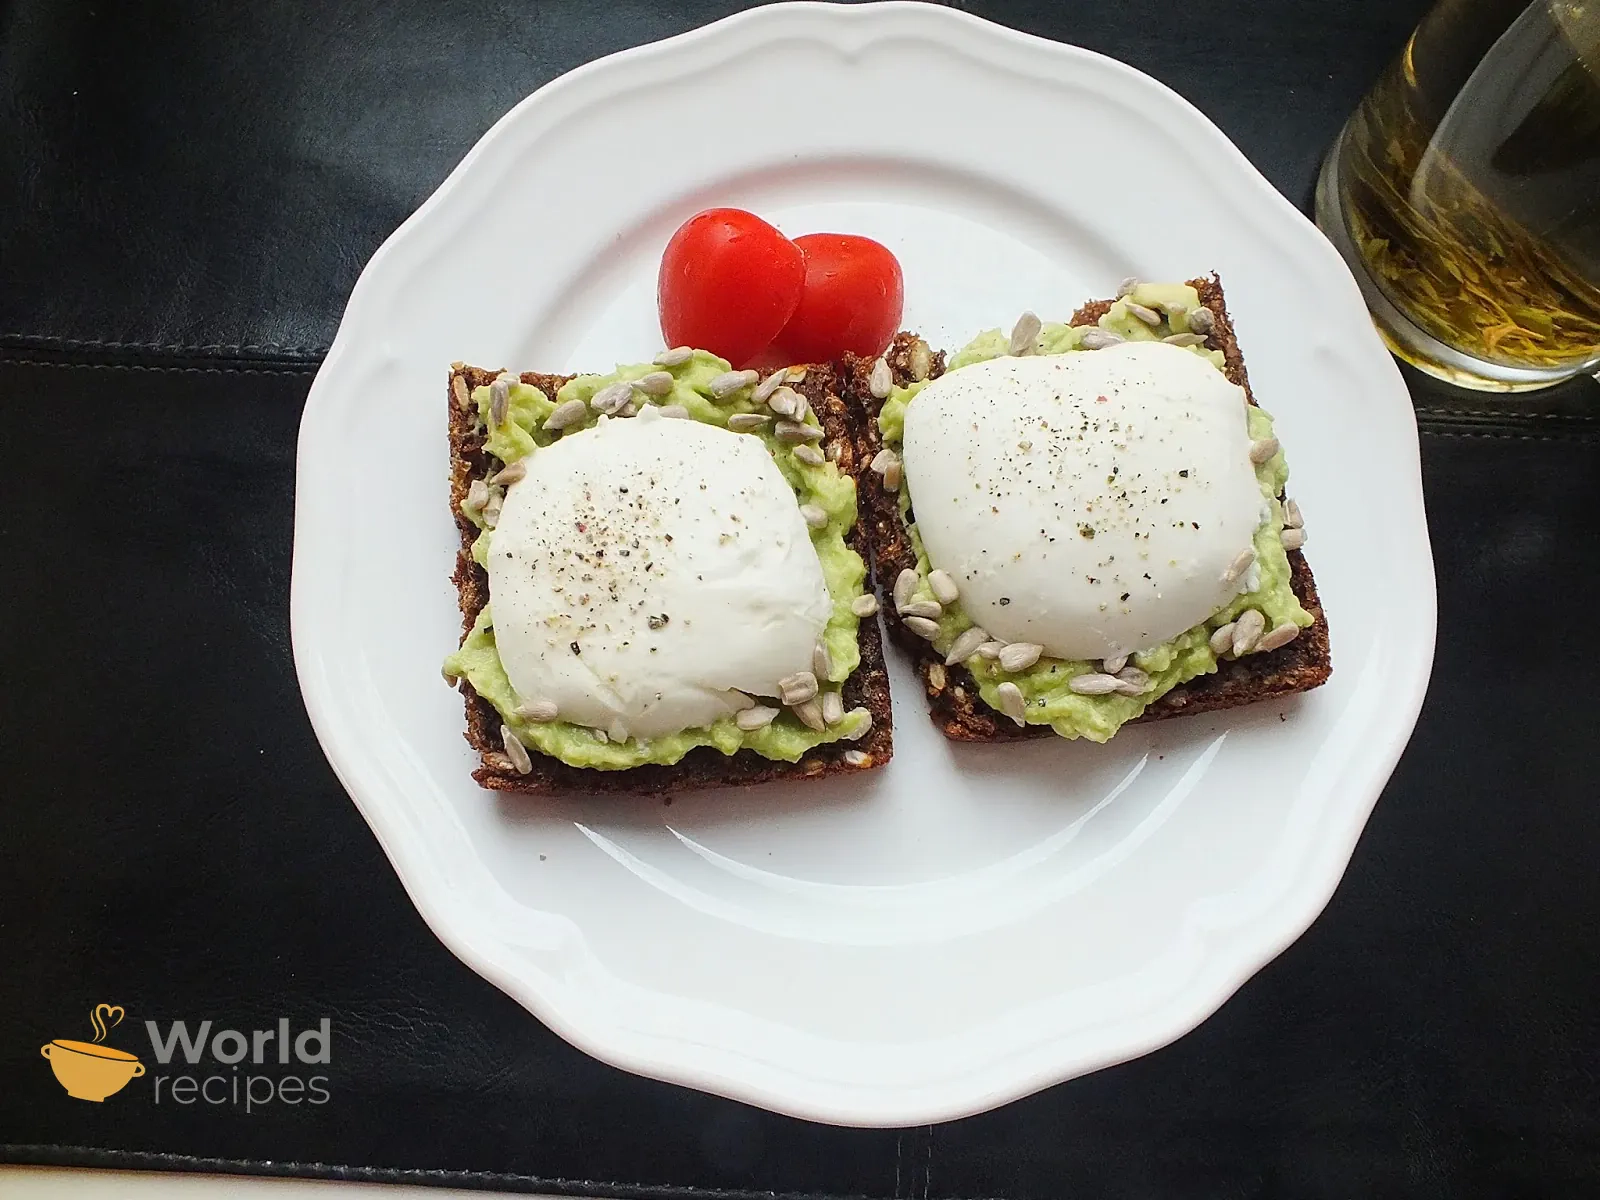 Pusryčių skrebučiai - sumuštiniai su avokadais ir mocarela sūriu